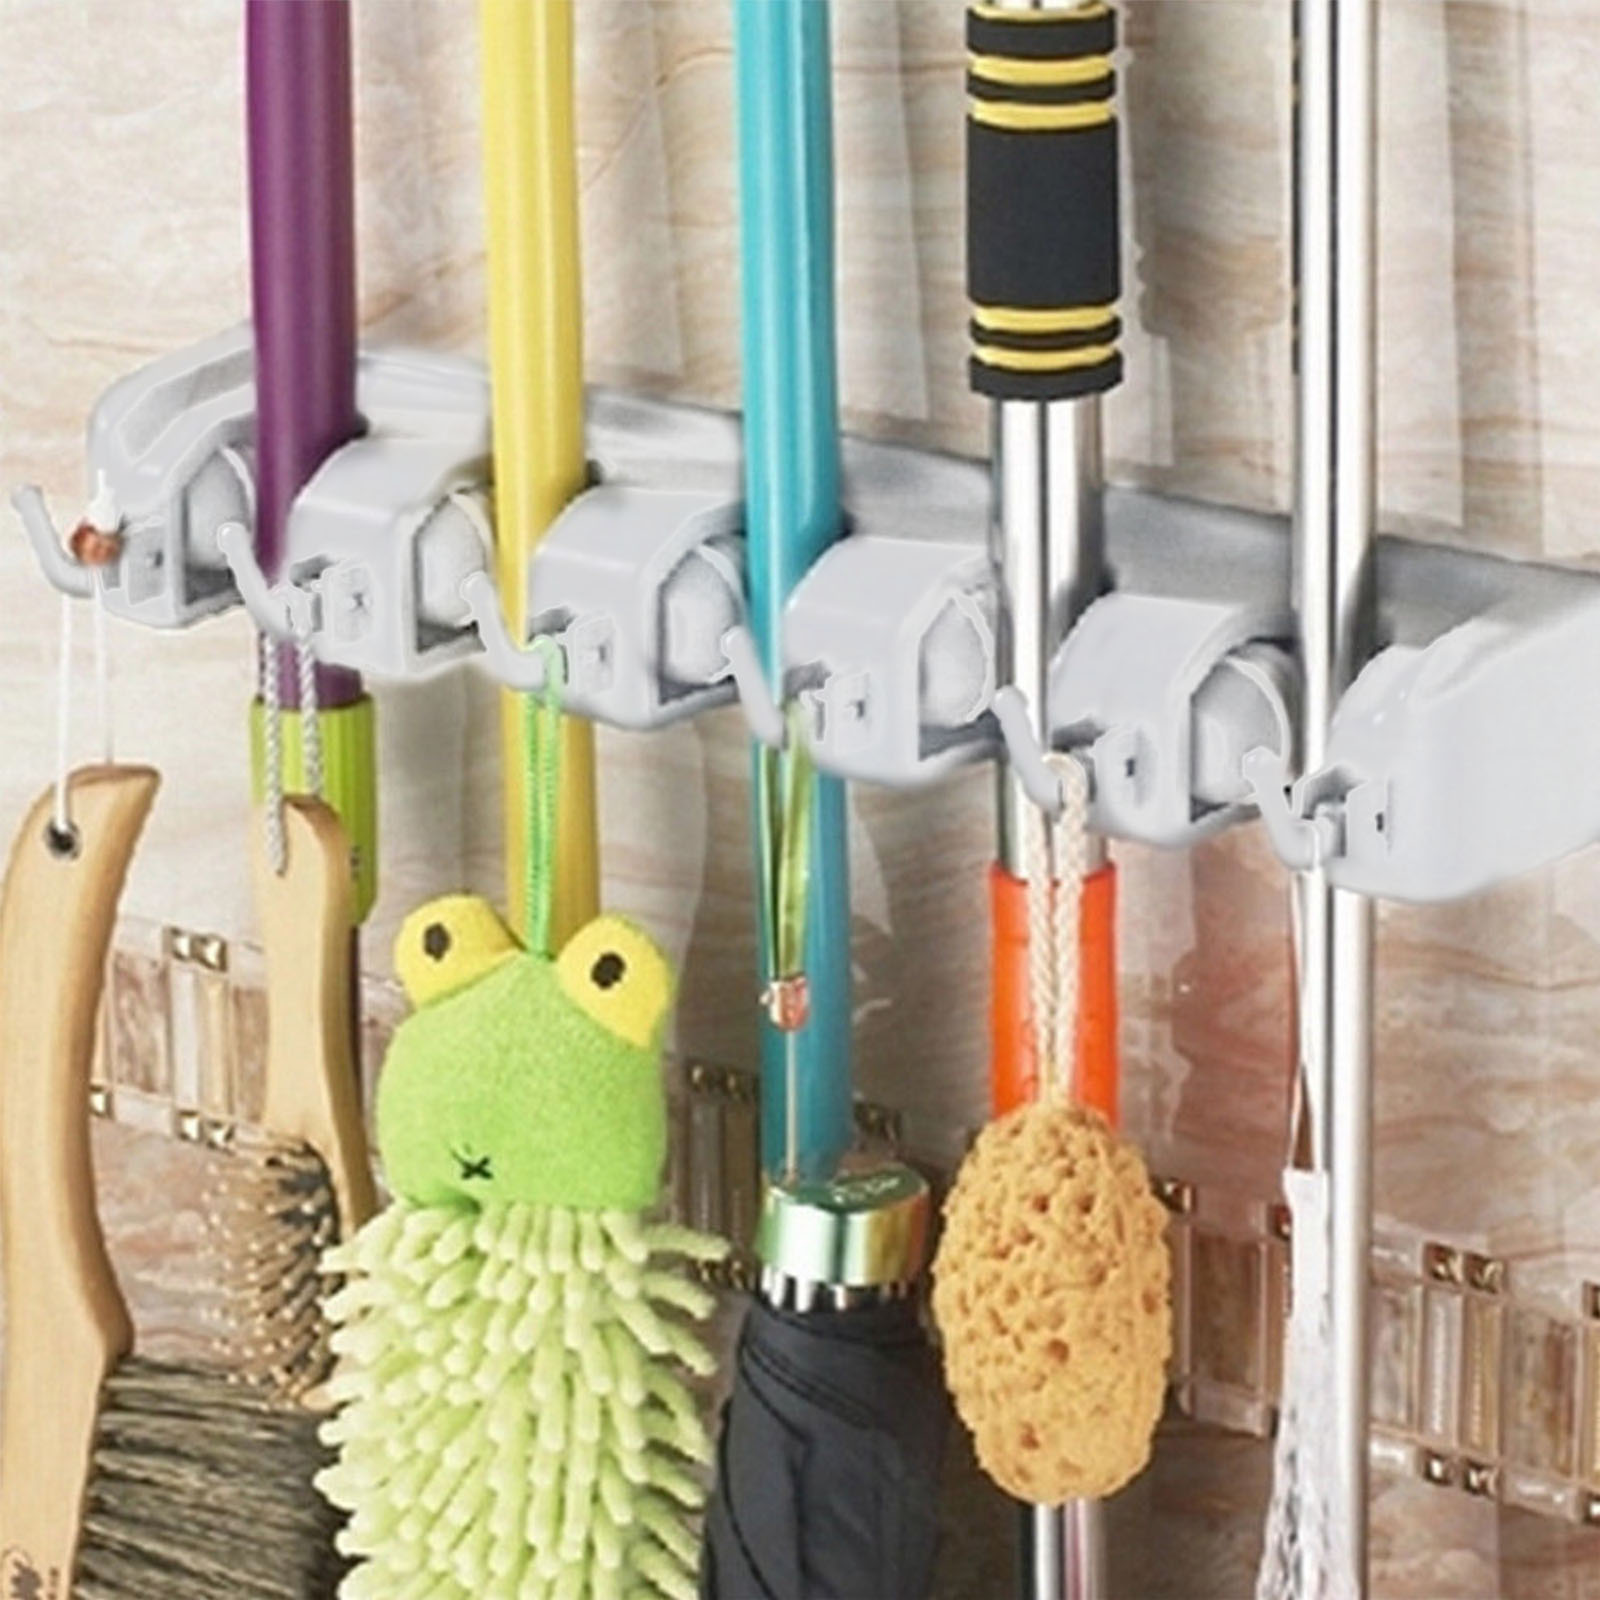 5 Rack Wall Mounted Bath Kitchen Storage Mop Organizer Holder Brush Broom Hanger | eBay1600 x 1600